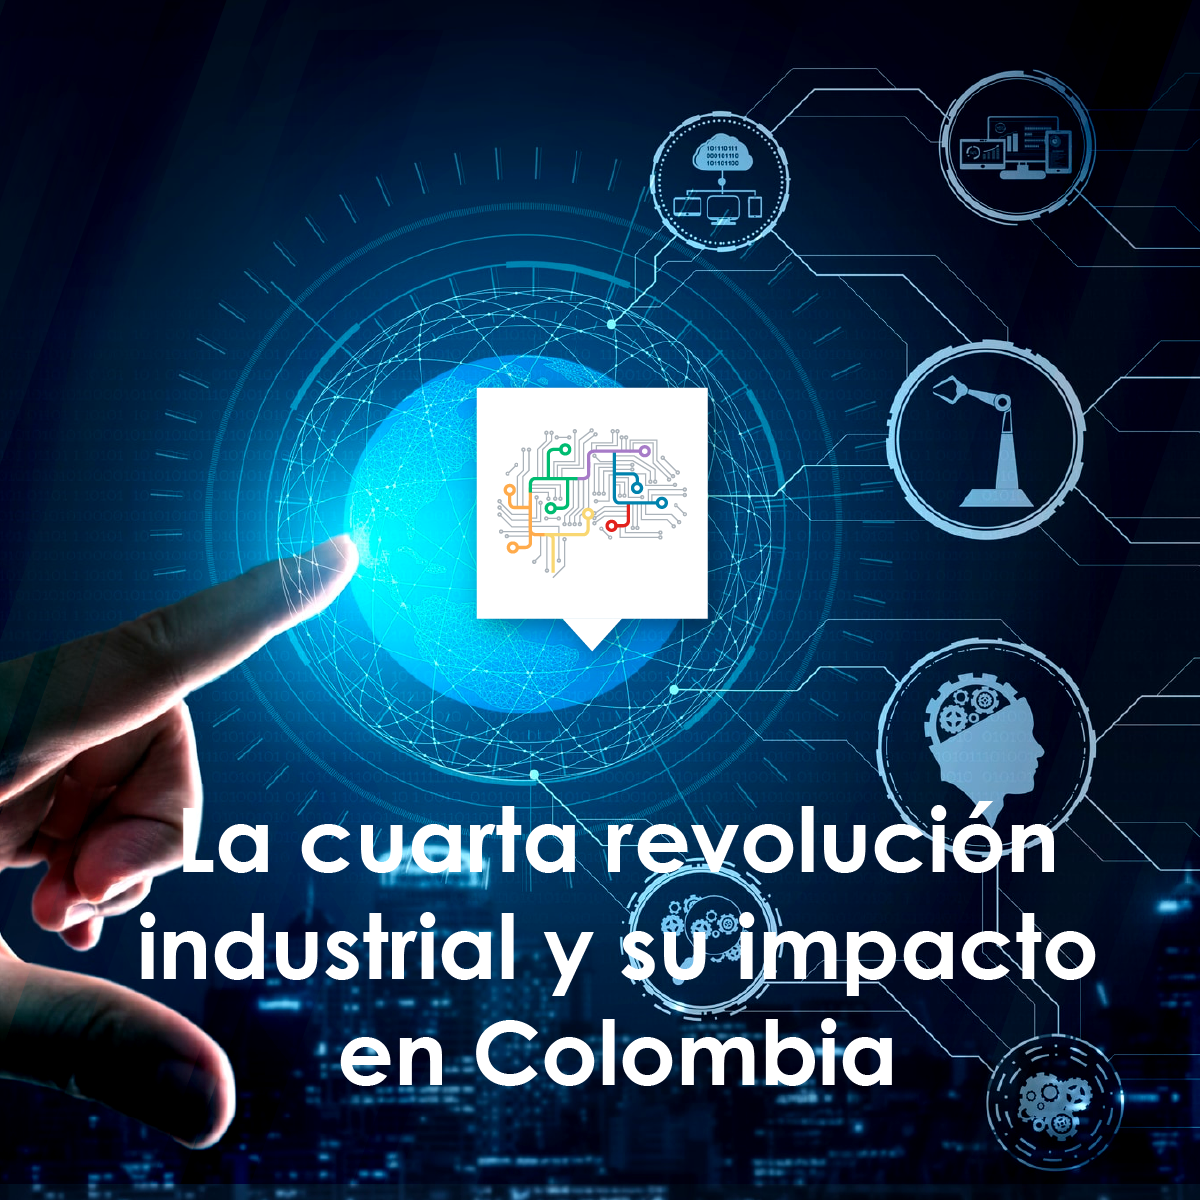 La cuarta revolución industrial y su impacto en Colombia